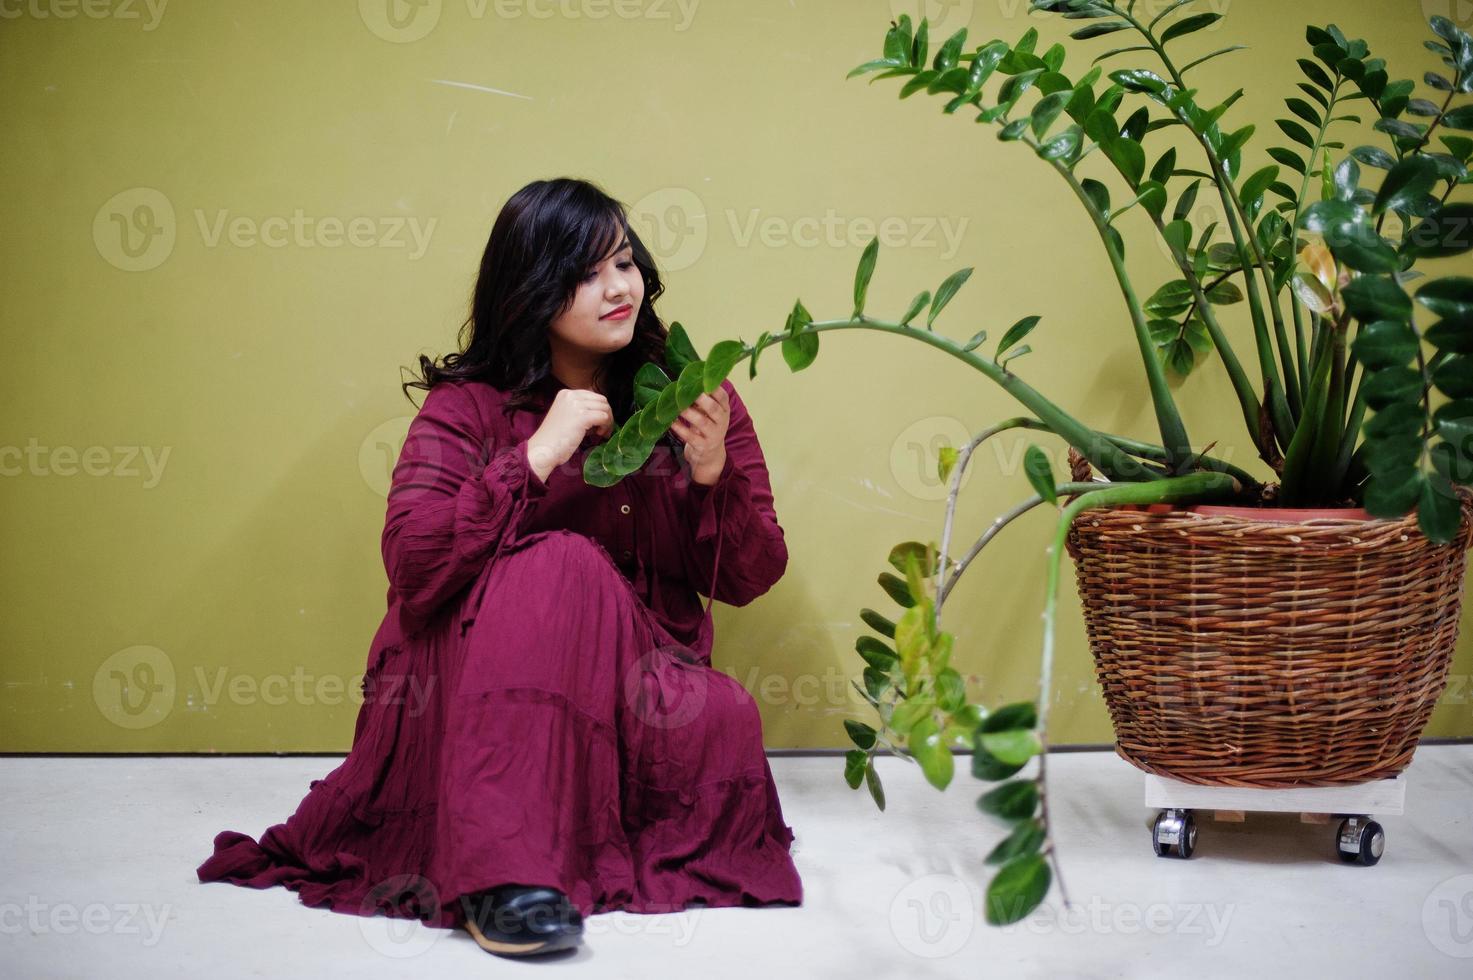 atractiva mujer del sur de Asia con un vestido de color rojo intenso posó en el estudio sobre un fondo verde con vegetación. foto